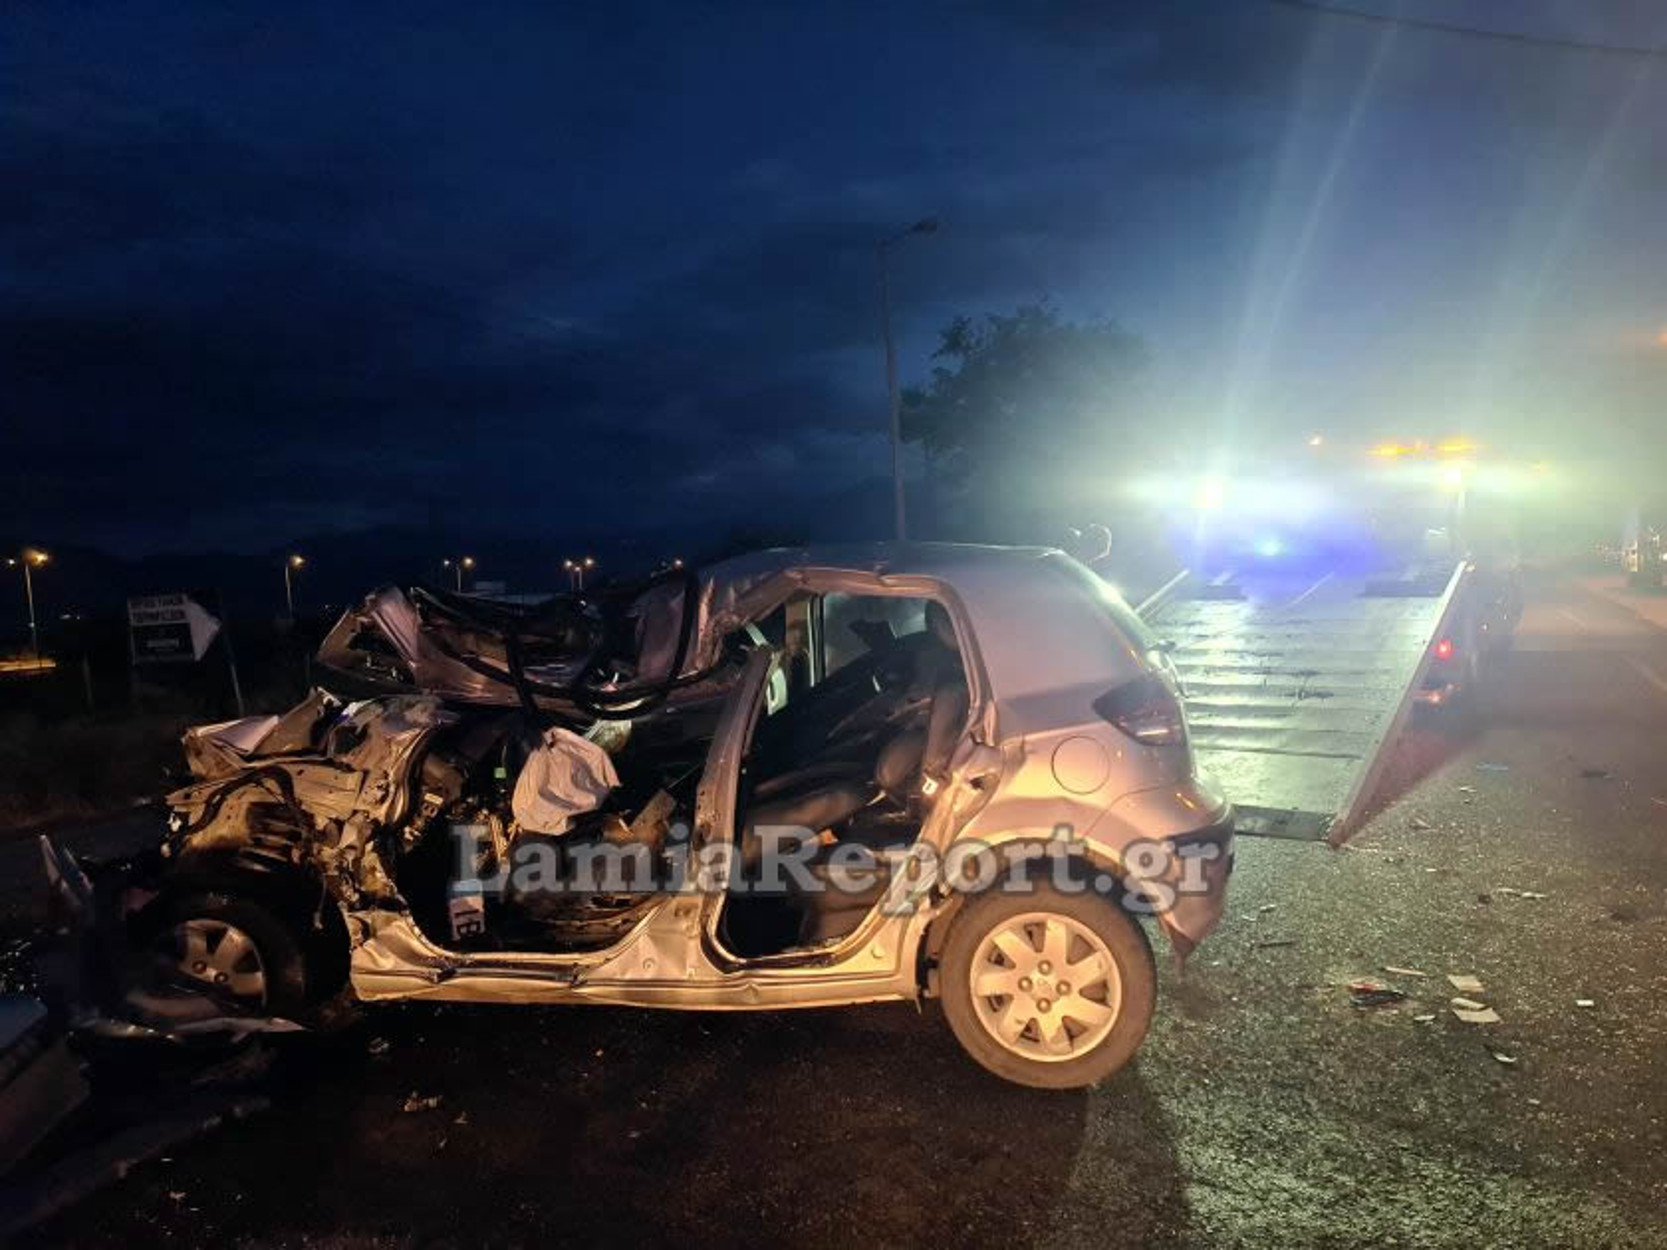 Λαμία: Σοκαριστικό τροχαίο με ένα νεκρό – Άμορφη μάζα το αυτοκίνητο το οποίο καρφώθηκε σε φορτηγό